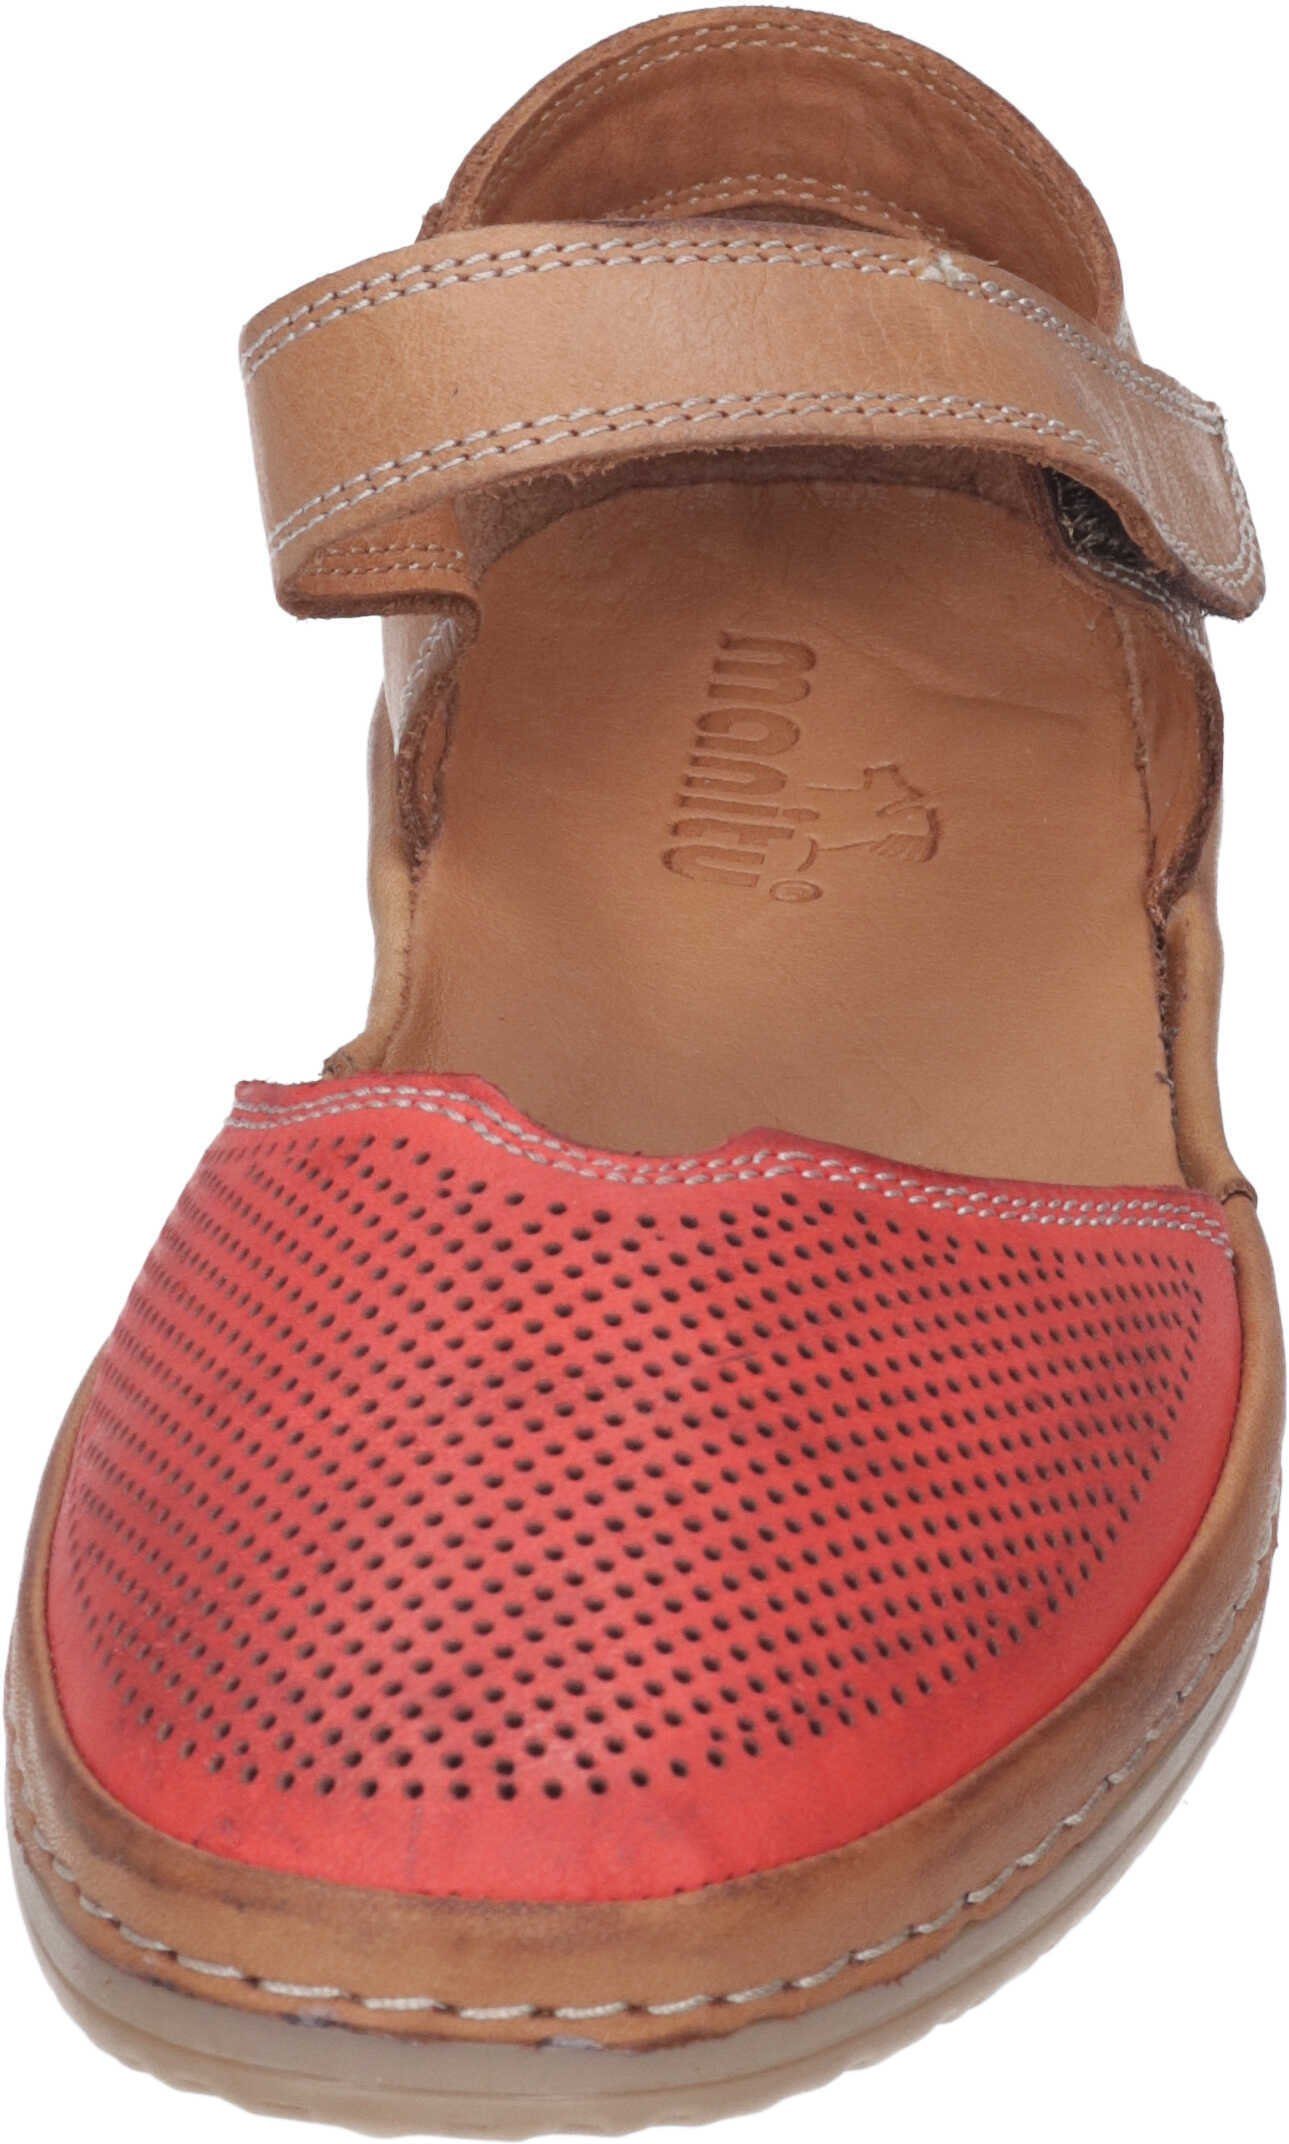 Manitu Sandalen Sandalette aus echtem Leder rot